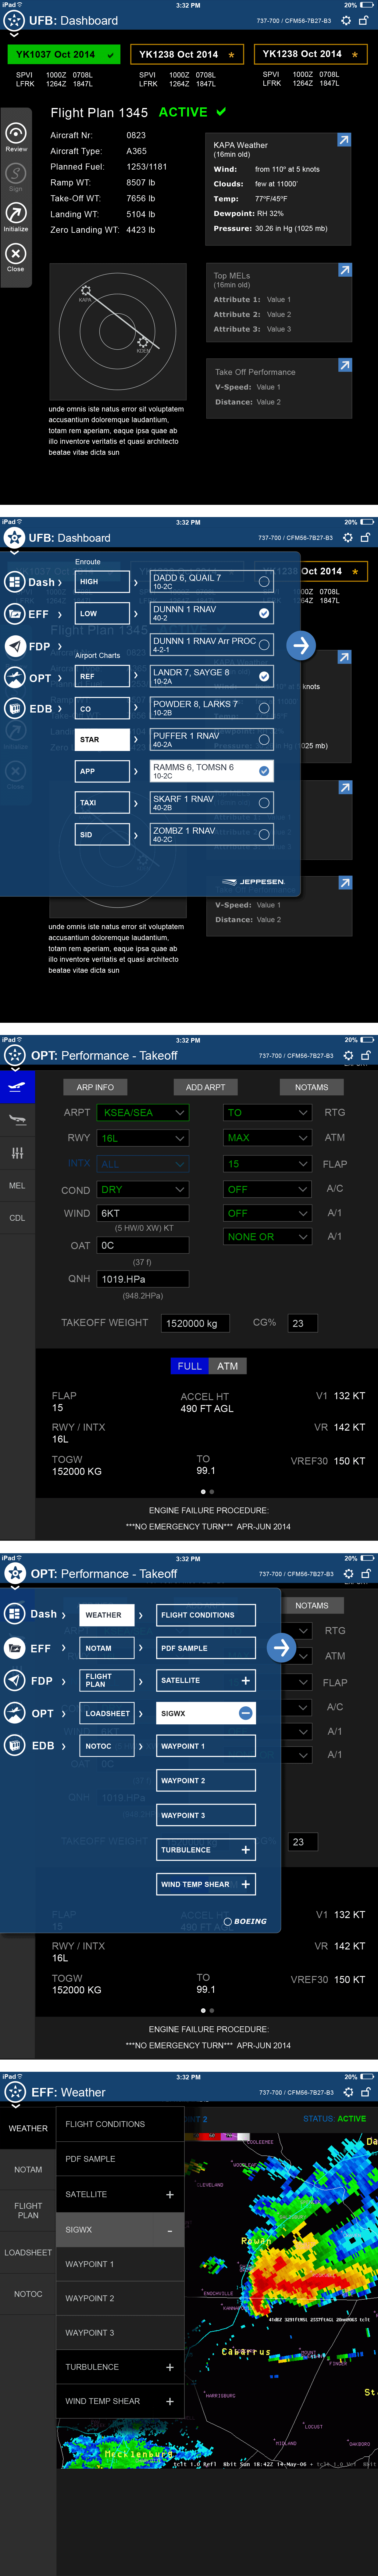 Boeing Tablet App Mock